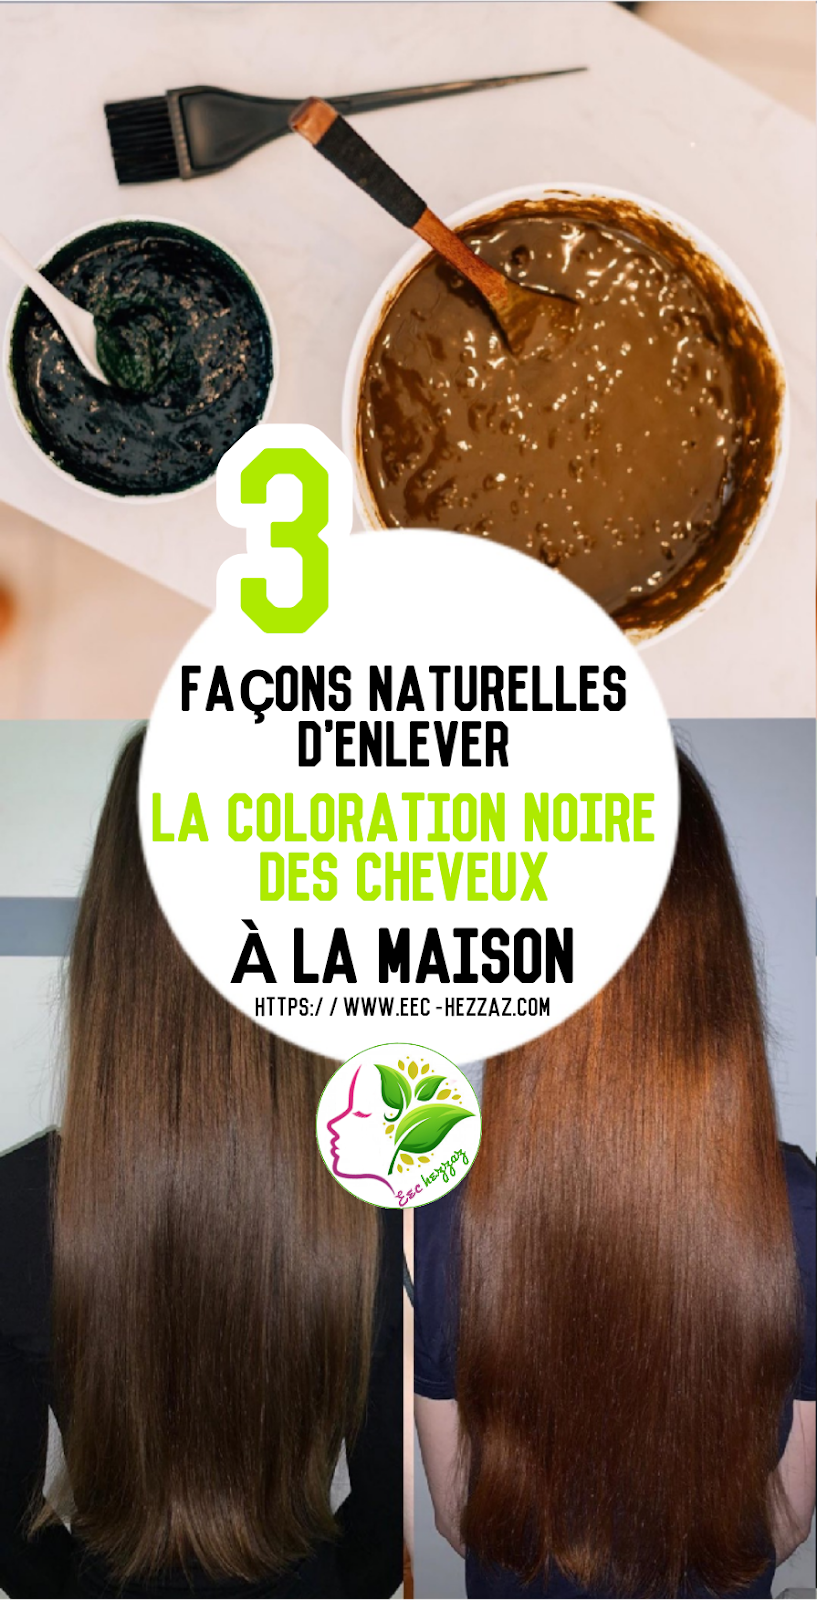 3 façons naturelles d'enlever la coloration noire des cheveux à la maison